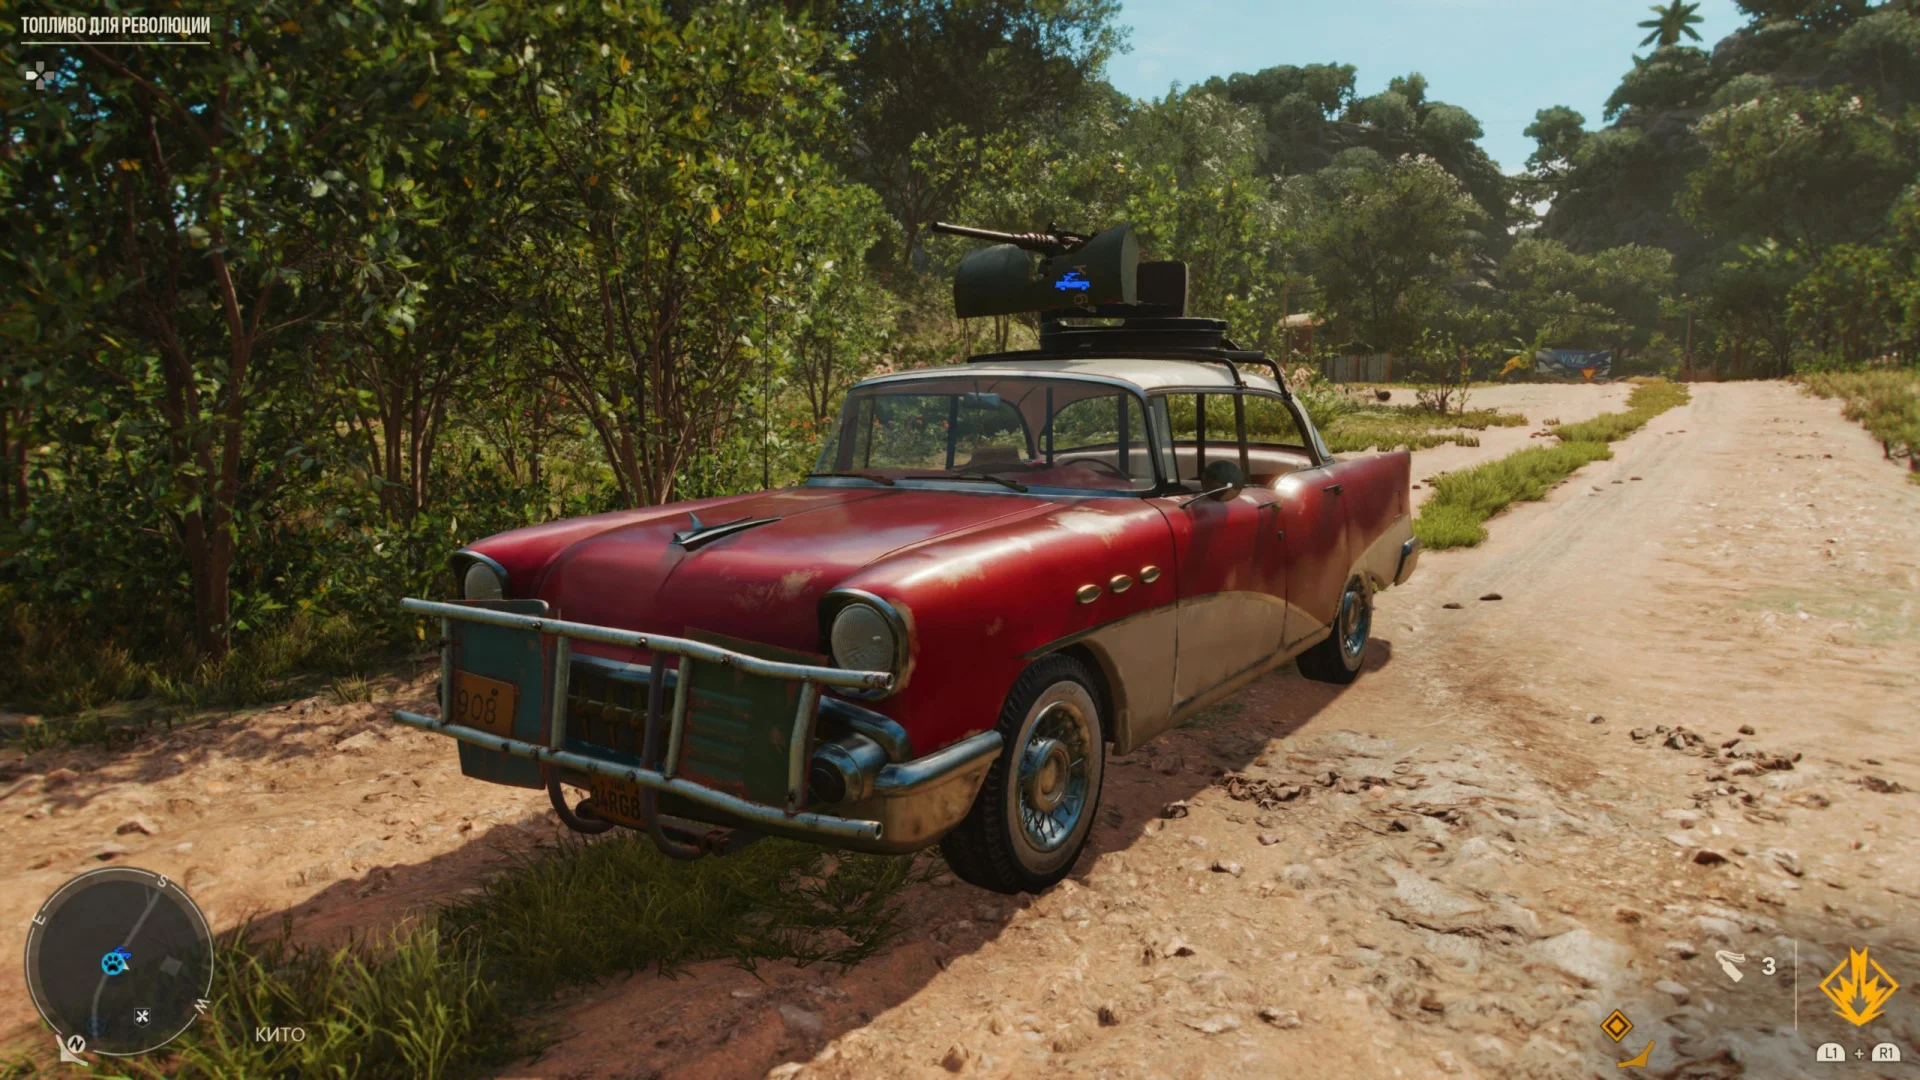 Гайд: Как найти все модели транспорта (коллекционные автомобили) в Far Cry 6 - фото 2